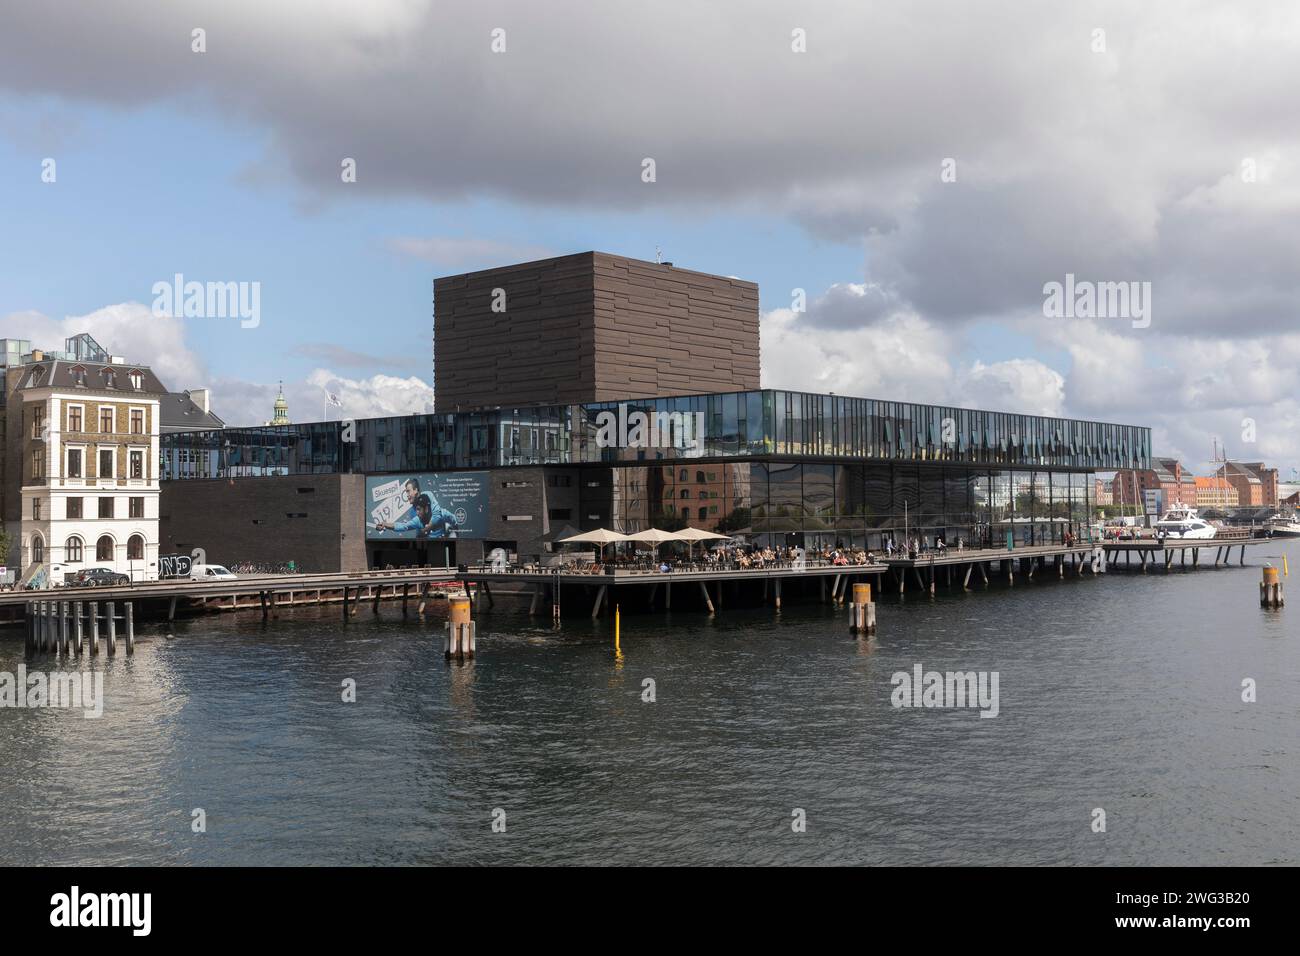 Kopenhagen, moderne Architektur: Das Theater Skuespilhuset von den Architekten Boje Lundgaard und Lene Tranberg. Stockfoto